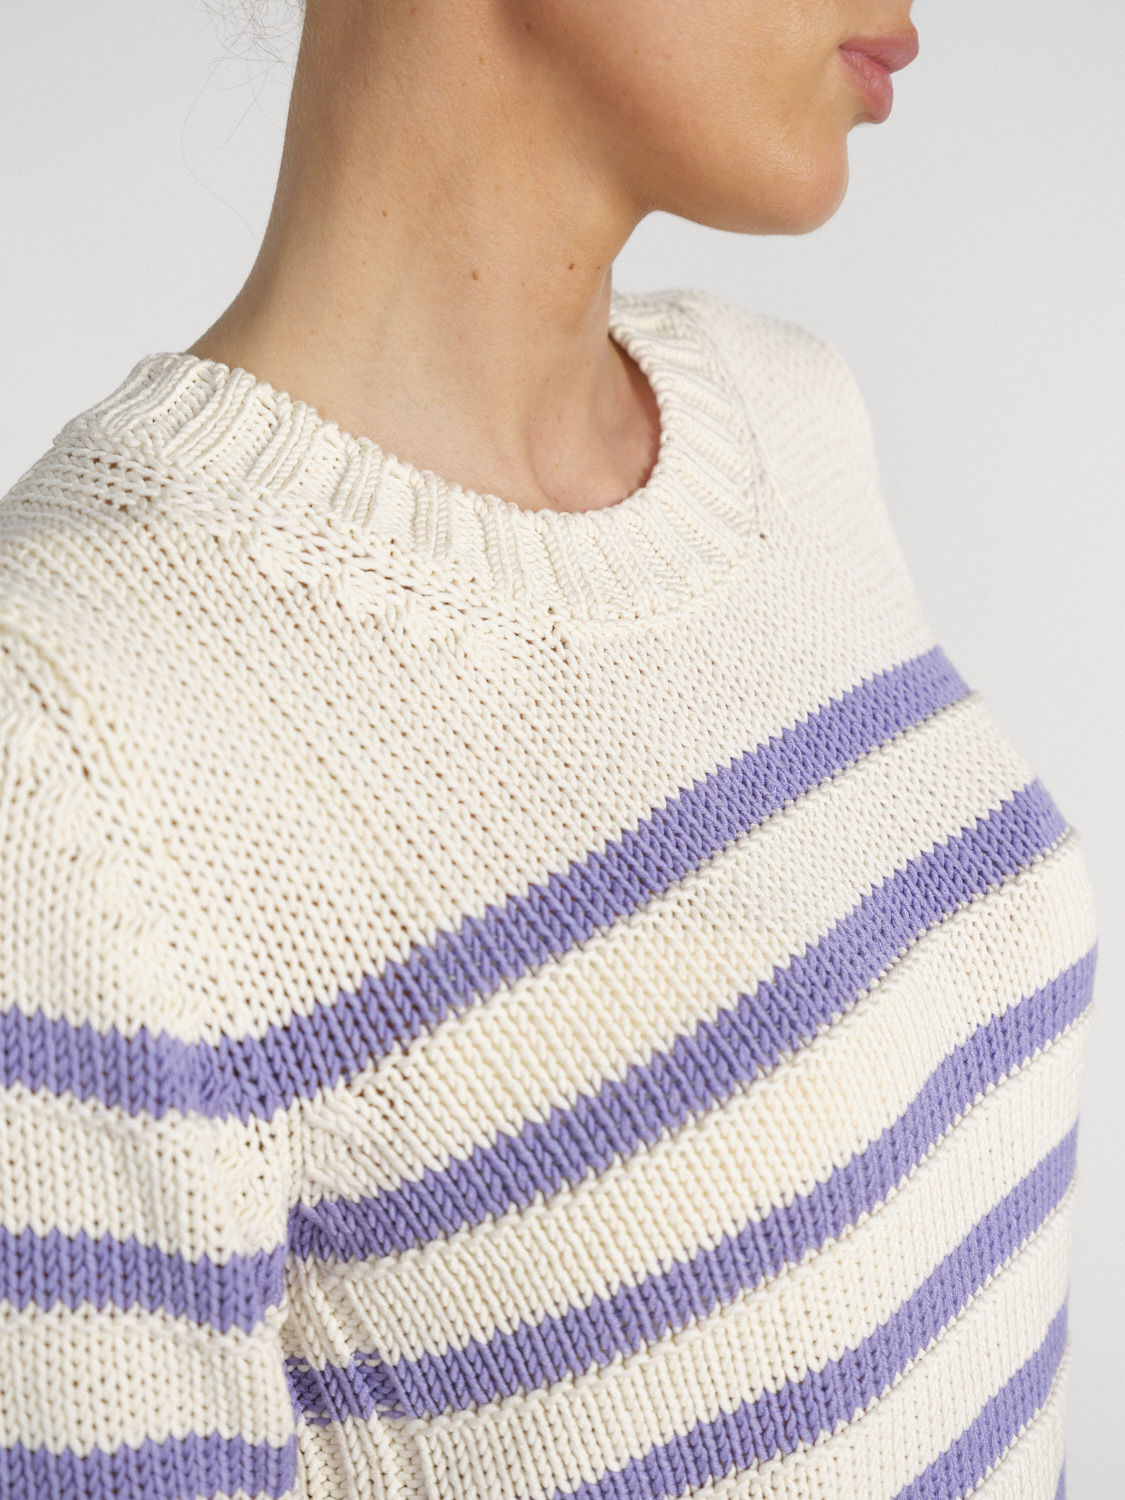 Iris von Arnim Pallas - Short-sleeved sweater with a striped design  white M